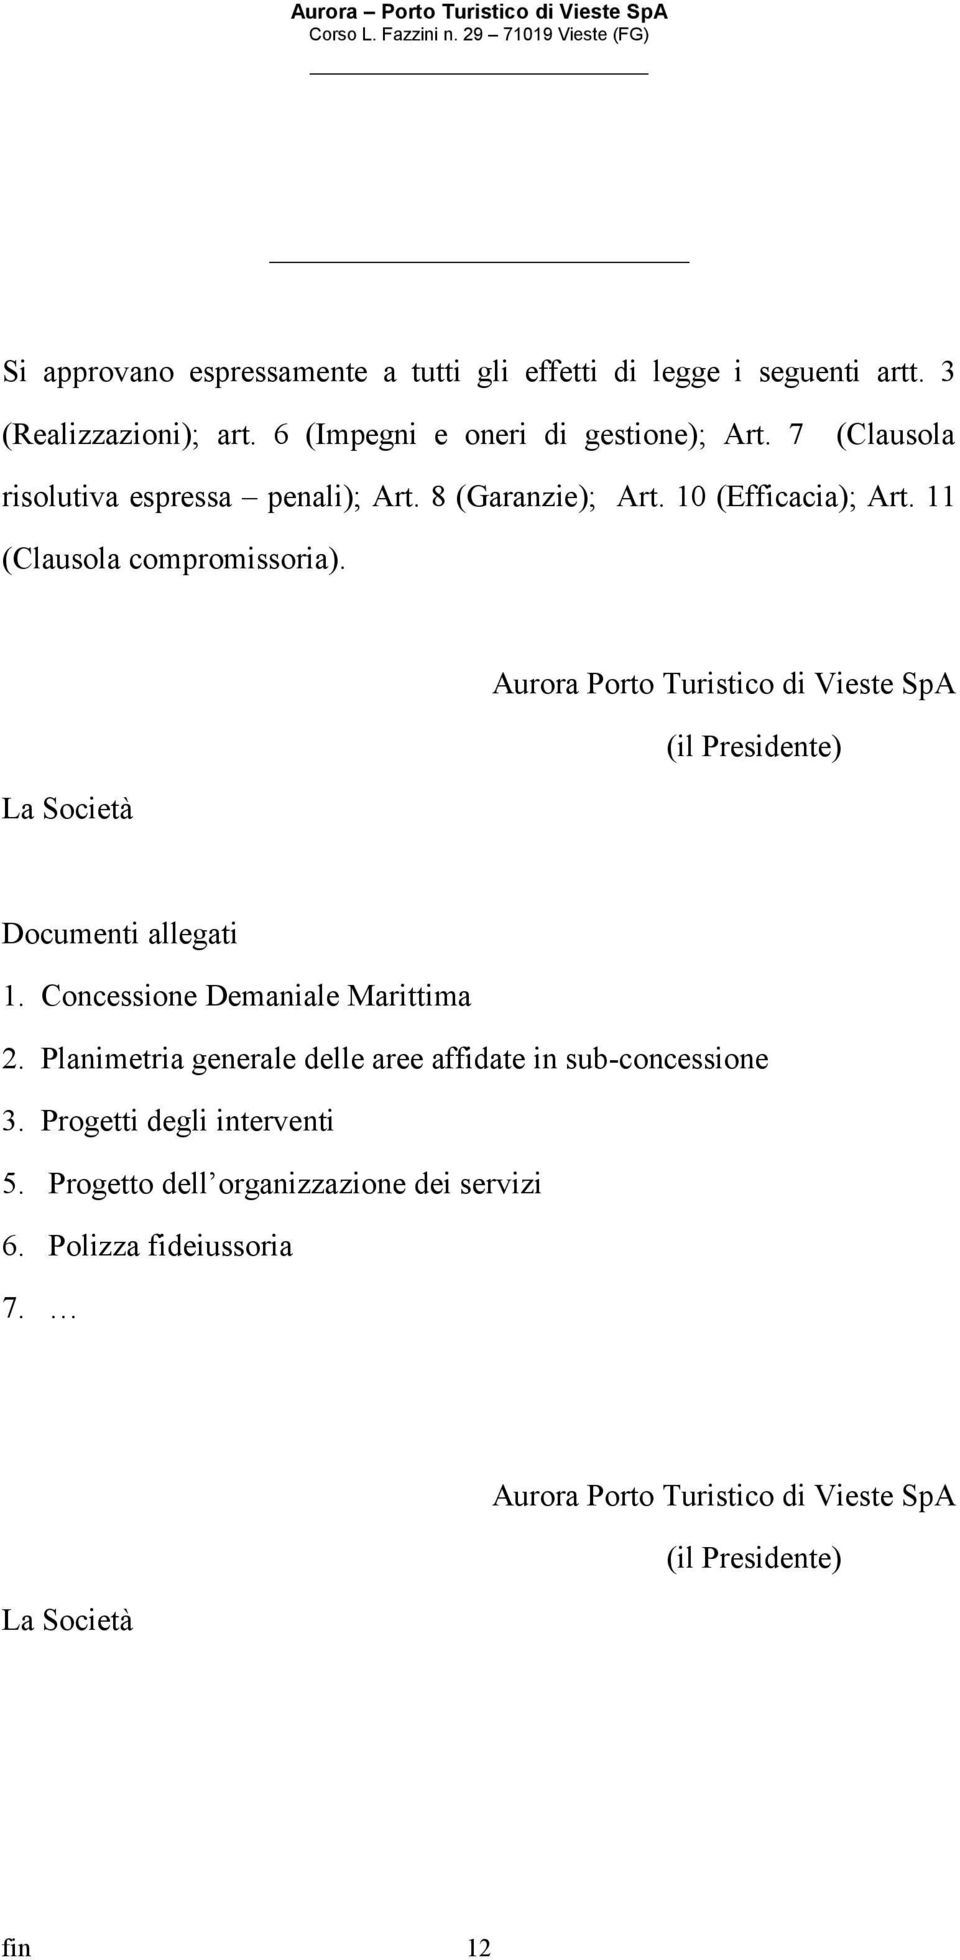 La Società Aurora Porto Turistico di Vieste SpA (il Presidente) Documenti allegati 1. Concessione Demaniale Marittima 2.